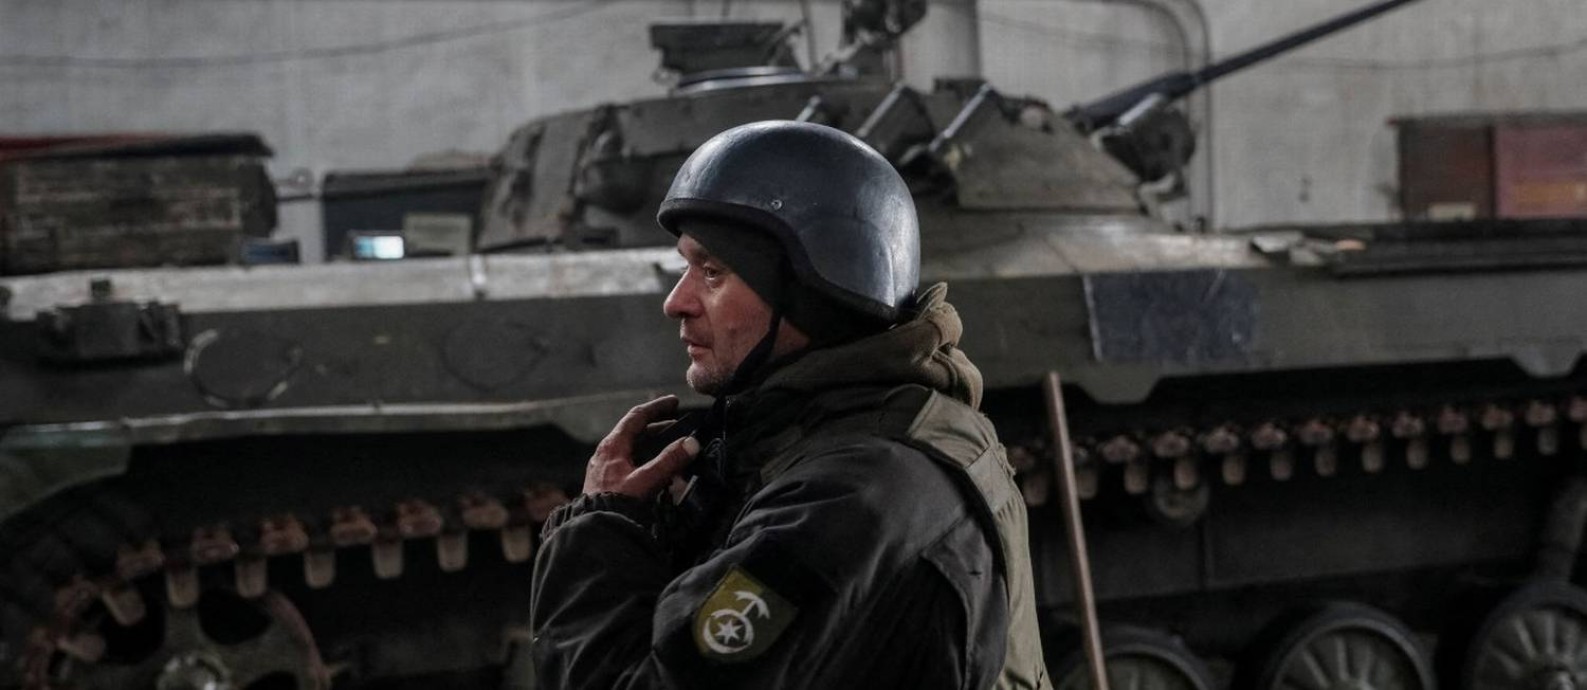 Militar ucraniano na cidade de Donetsk Foto: GLEB GARANICH / REUTERS